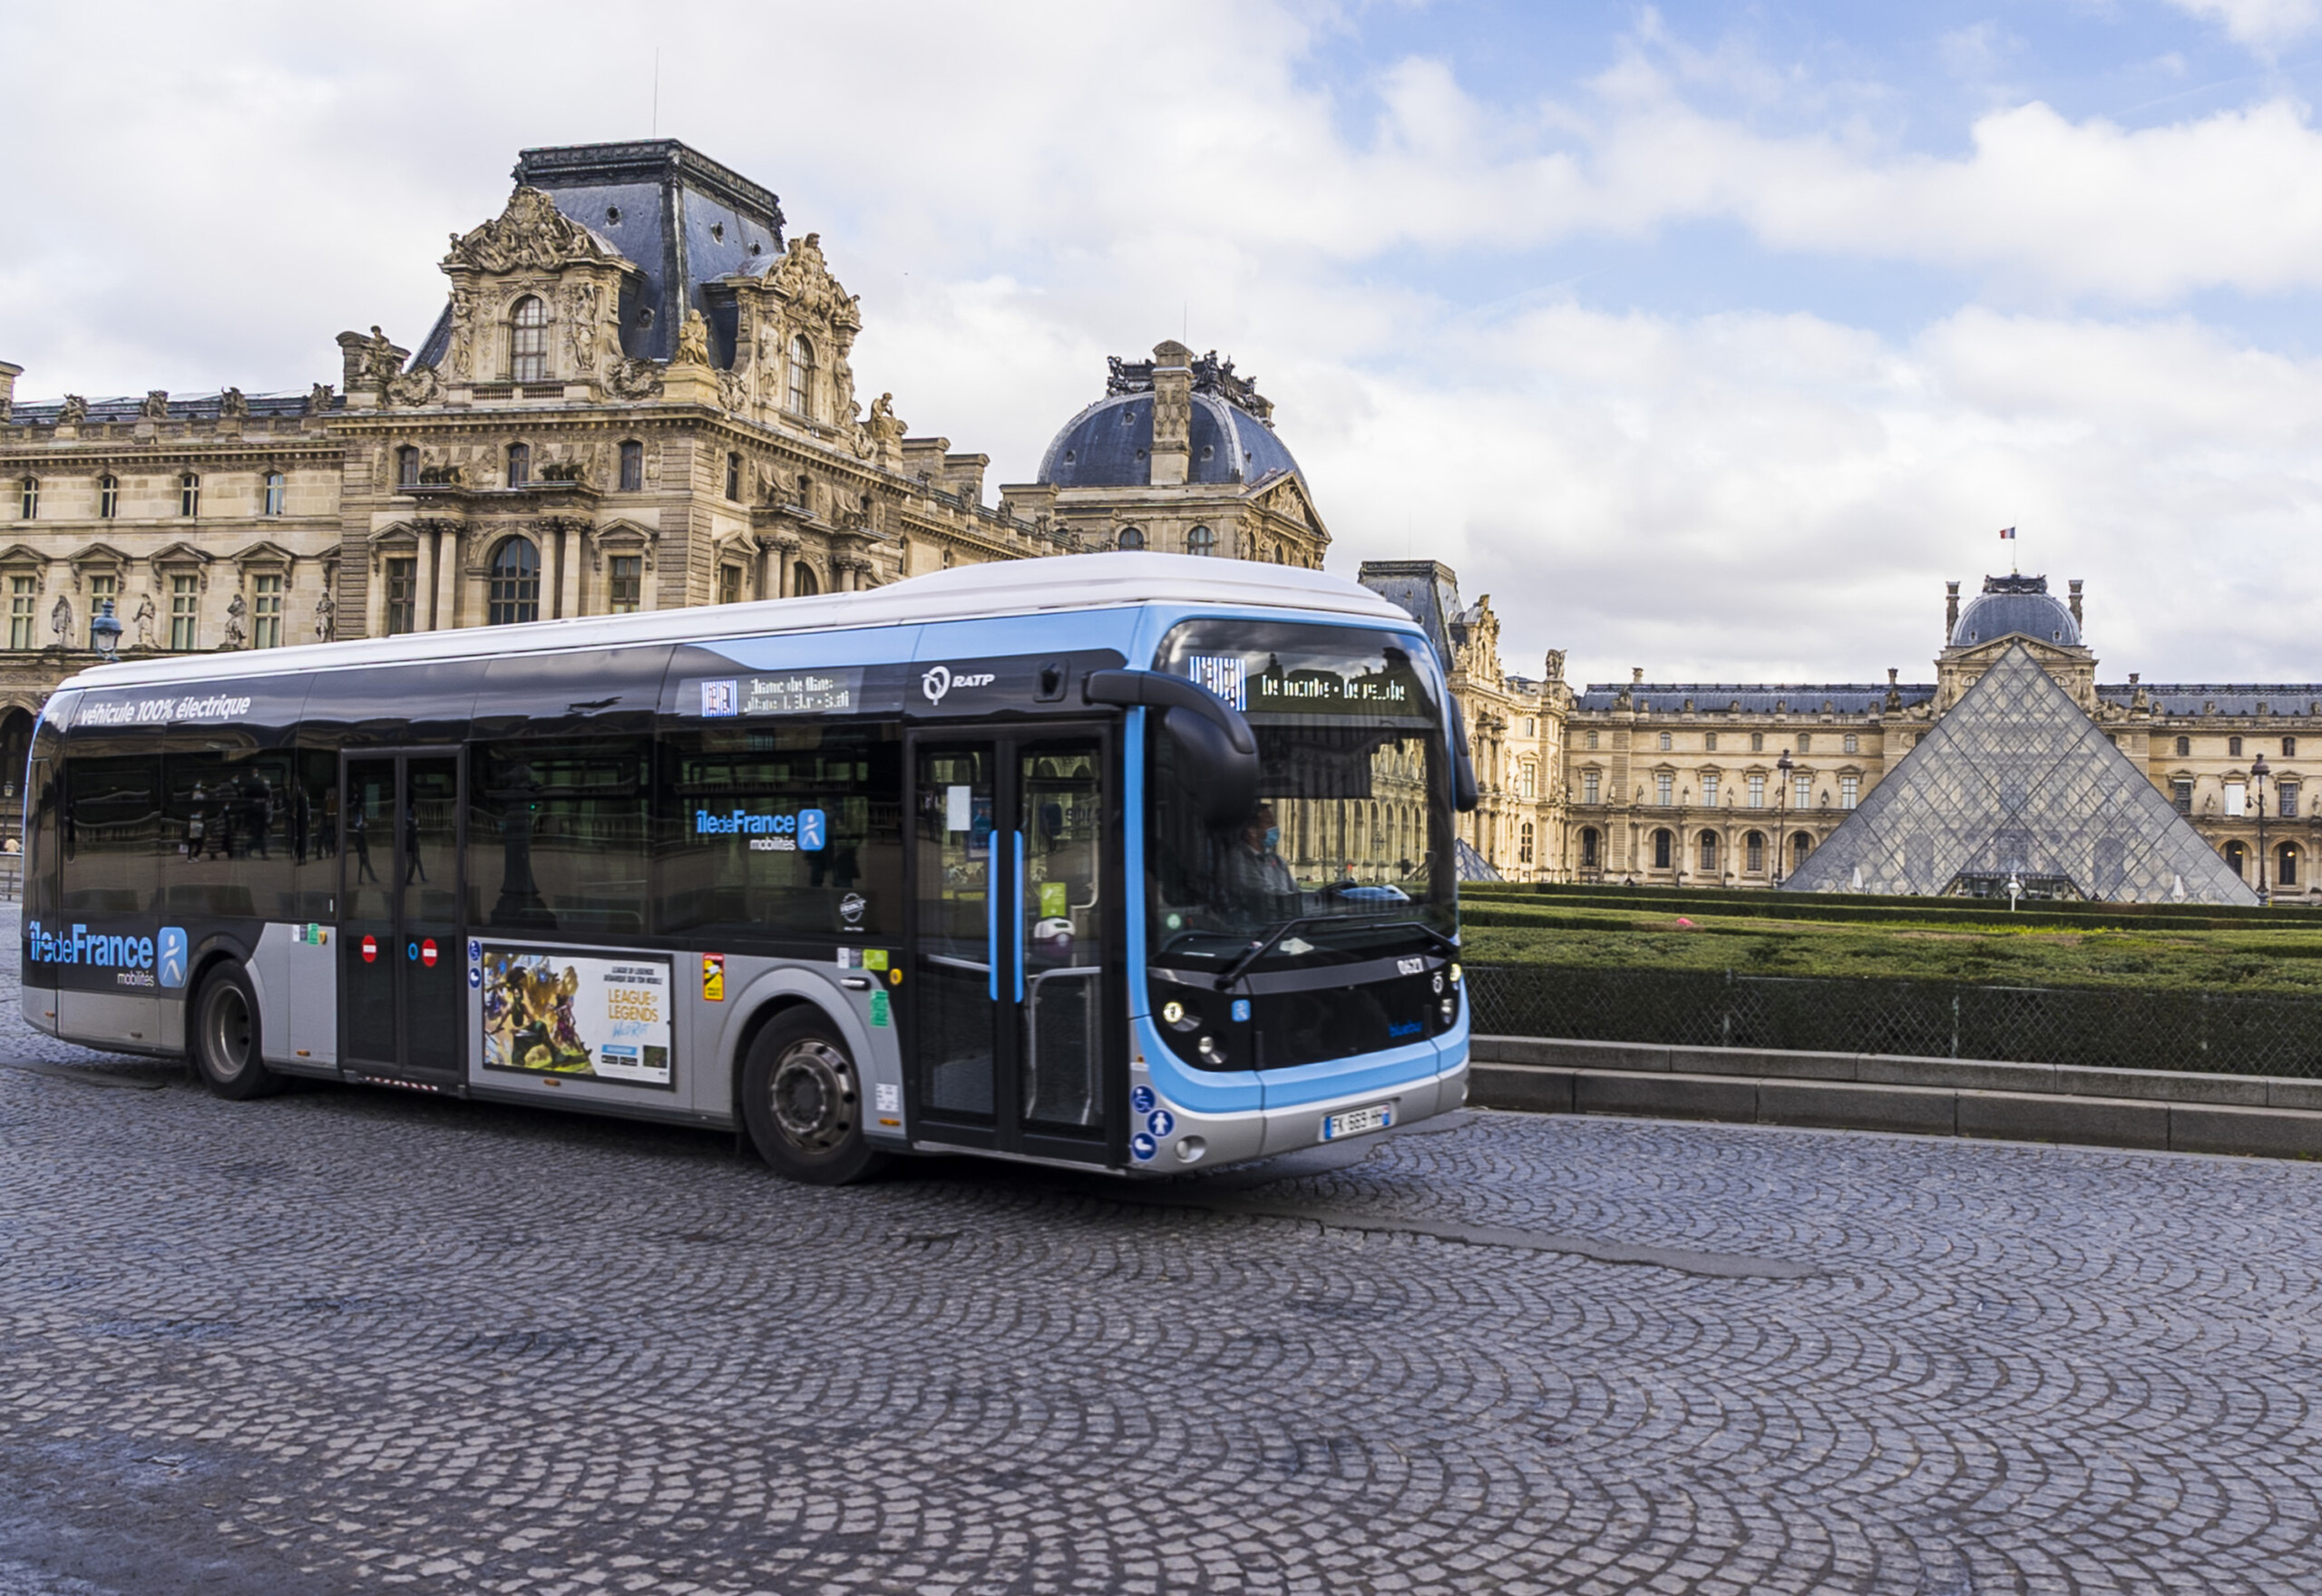 Visuel « bus2025 » : Les conducteurs doivent t’ils conduire d’une façon différente les bus électriques ?